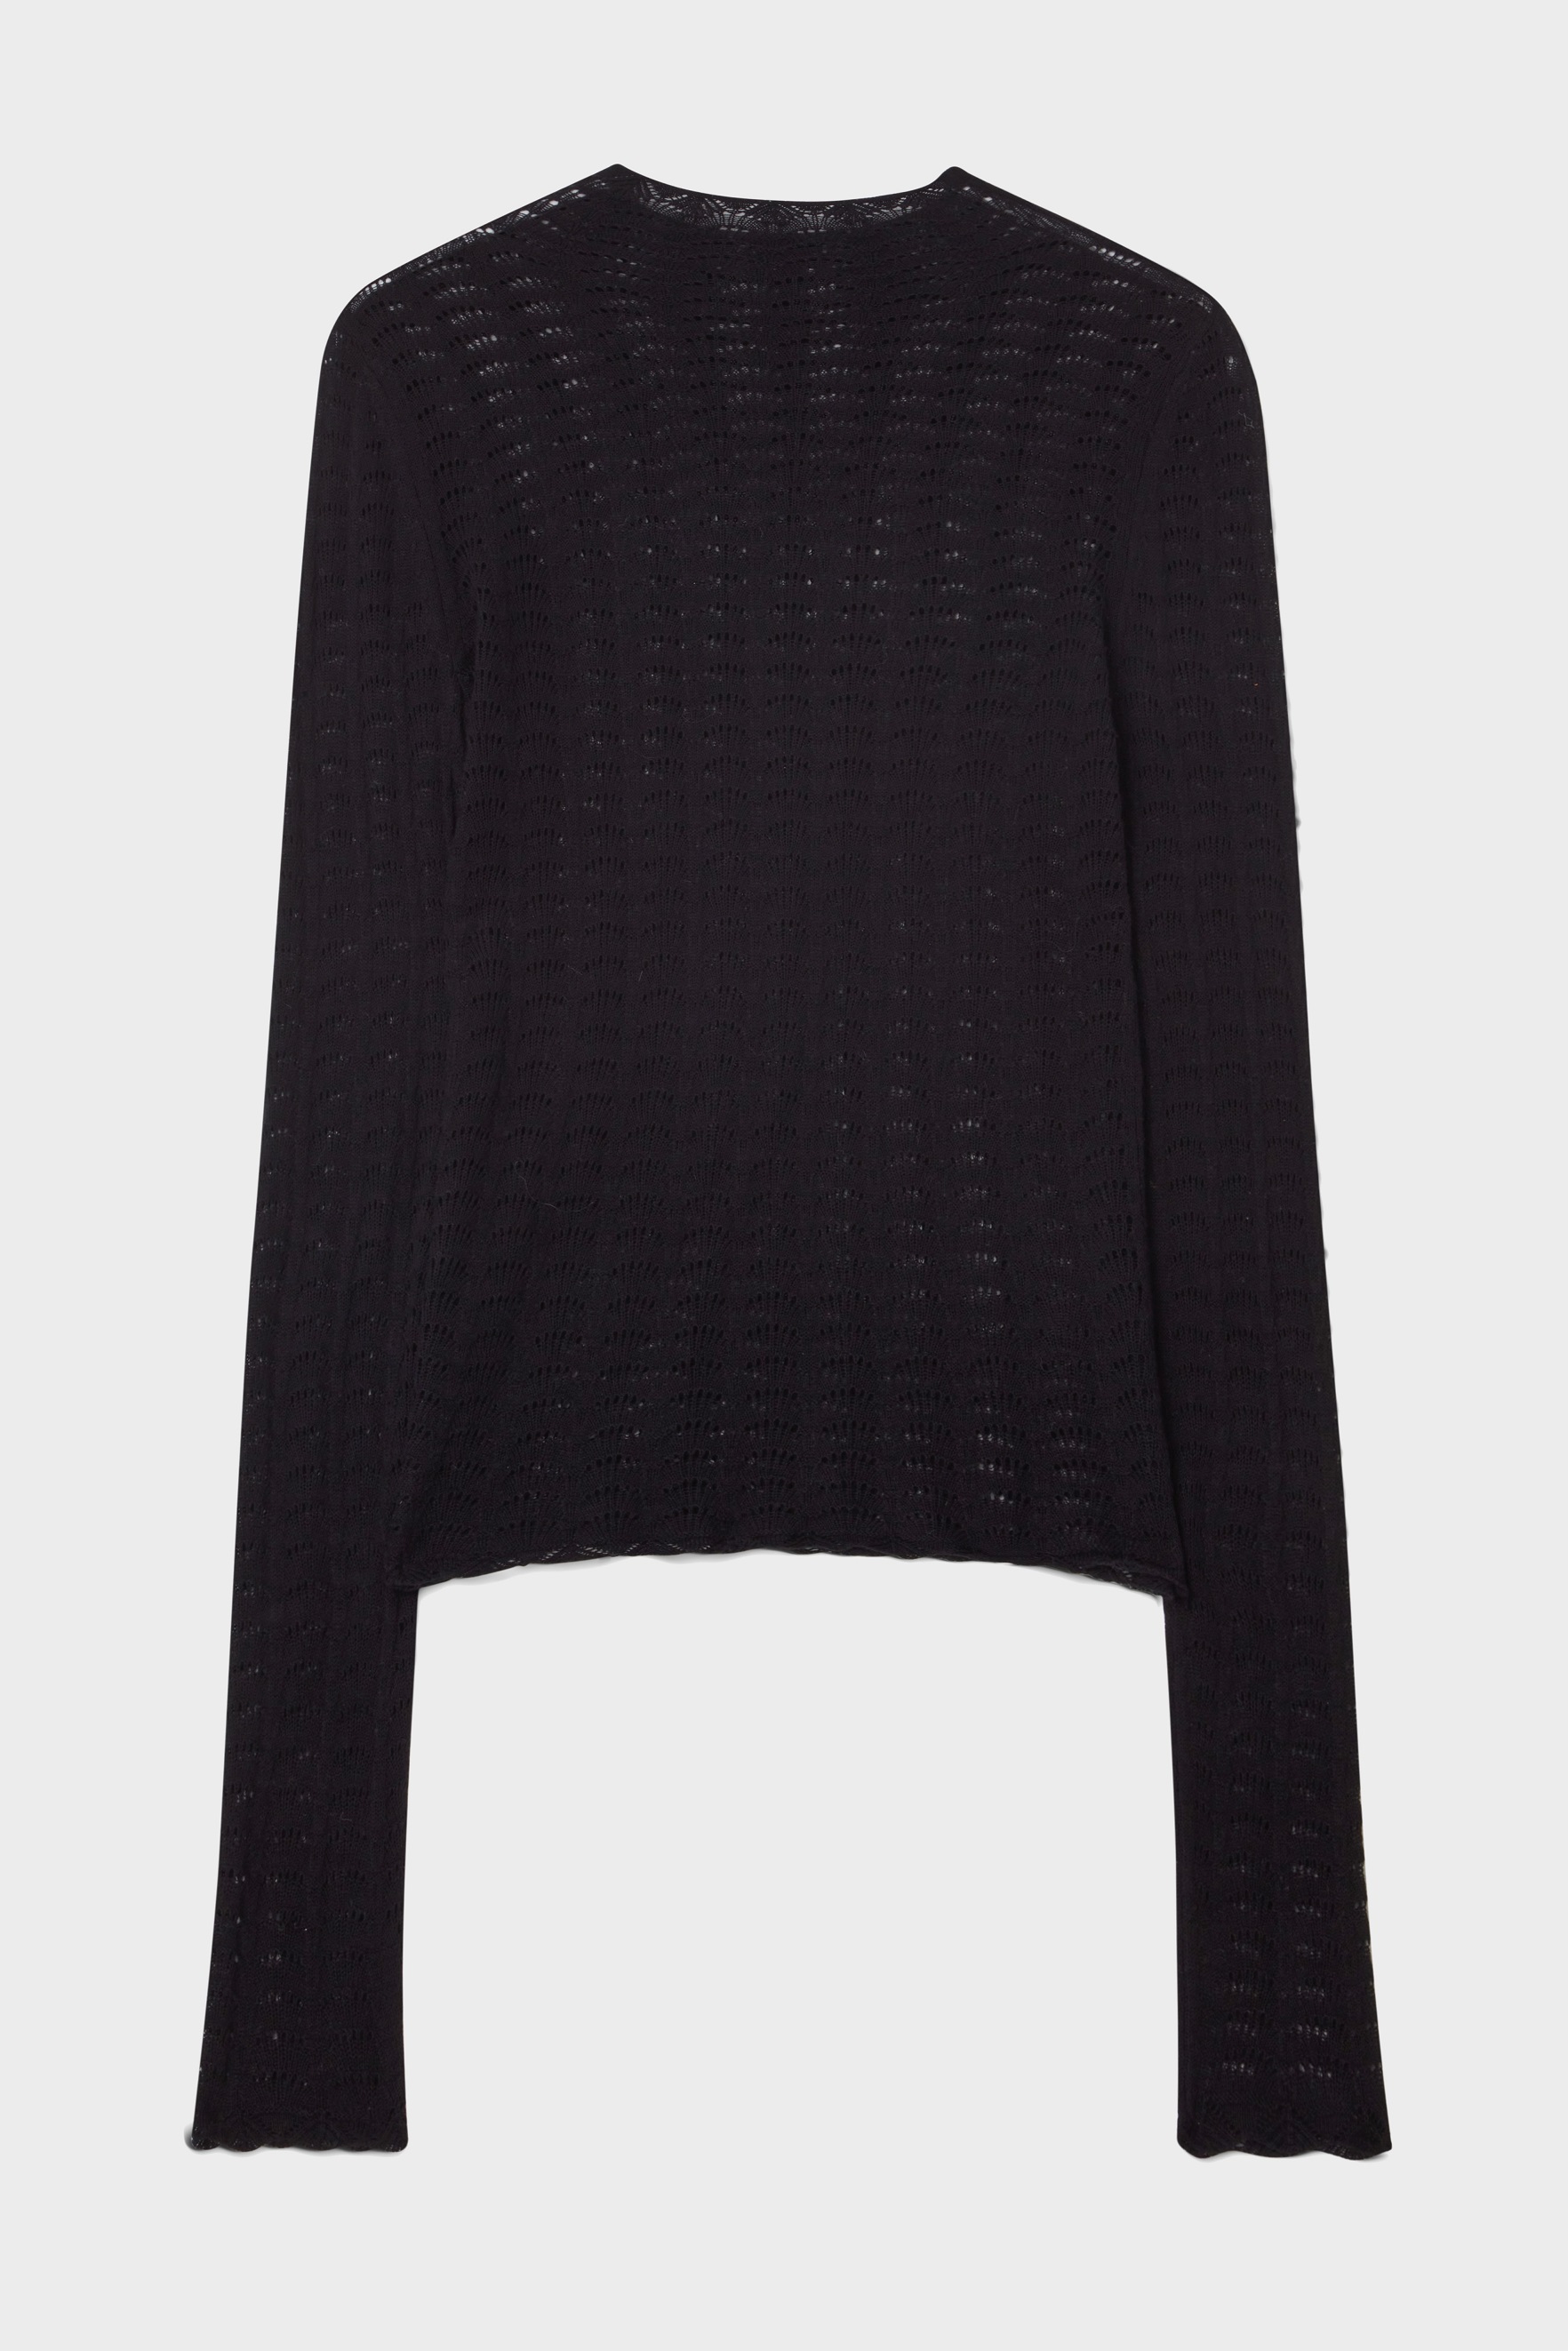 DAGMAR Lace Turtleneck Knit Sweater in Black